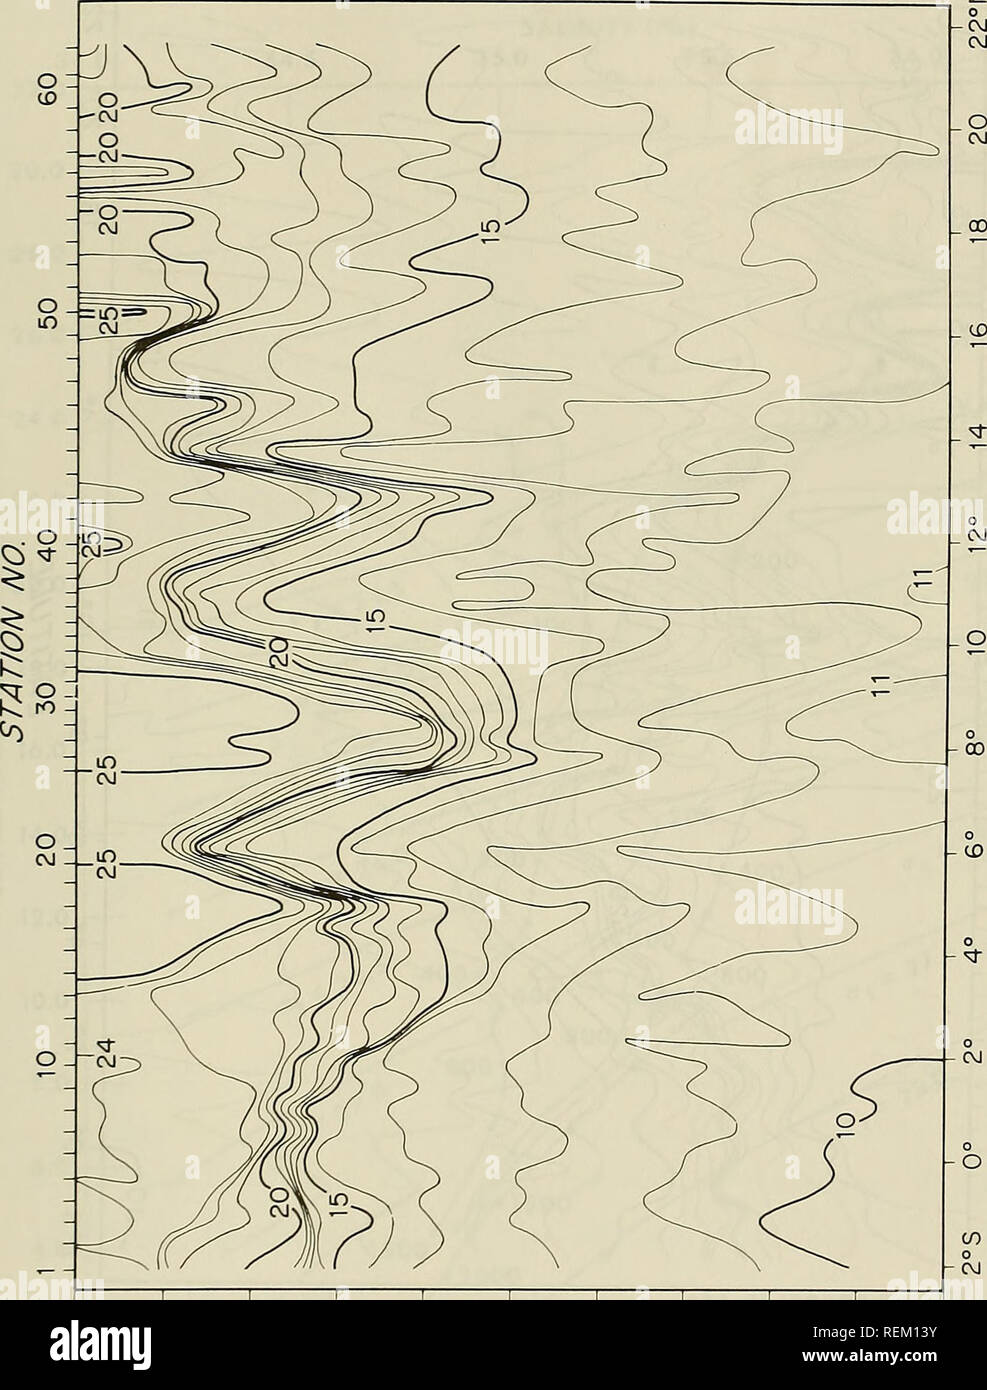 . Circolazione e proprietà oceanografiche nel bacino somalo come osservato durante il 1979 monsone sud-ovest. Oceanografia; correnti oceaniche; monsoni. Ui C3) ^ O   ::i 15 k. o ^ 13 -vj per 1- m x o 1 o 1 o o 1 o o o o o OvJ rO fS ^^JIJi^J HIdJO 47. Si prega di notare che queste immagini vengono estratte dalla pagina sottoposta a scansione di immagini che possono essere state migliorate digitalmente per la leggibilità - Colorazione e aspetto di queste illustrazioni potrebbero non perfettamente assomigliano al lavoro originale. Beatty, William H; Bruce, John G; Guthrie, Robert C; Stati Uniti. Naval Oceanographic Office. San Luigi, Mississippi : Oceano navale Foto Stock